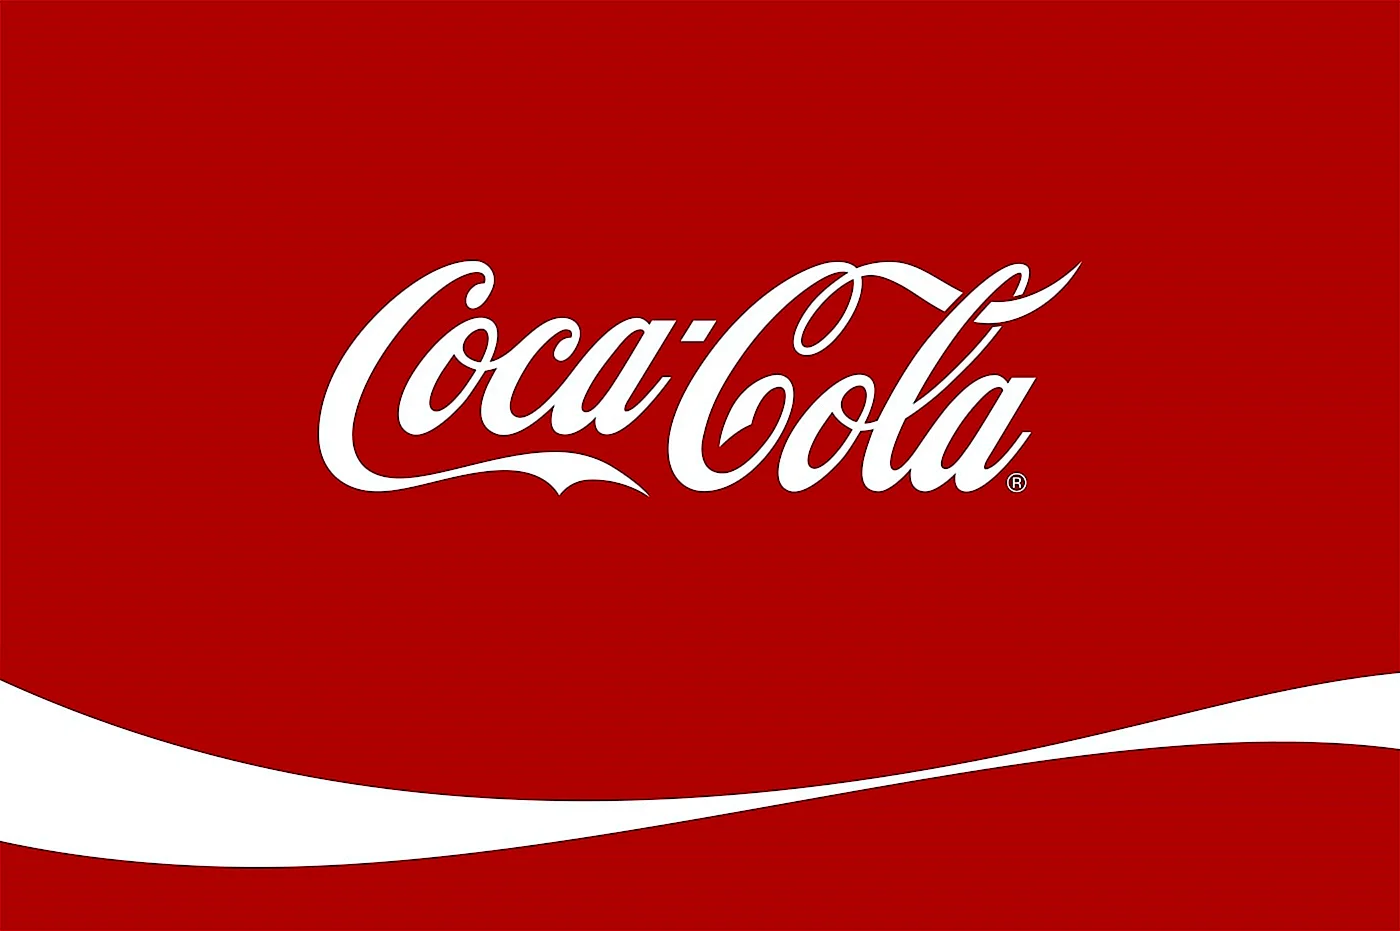 The Coca-Cola Company 1886